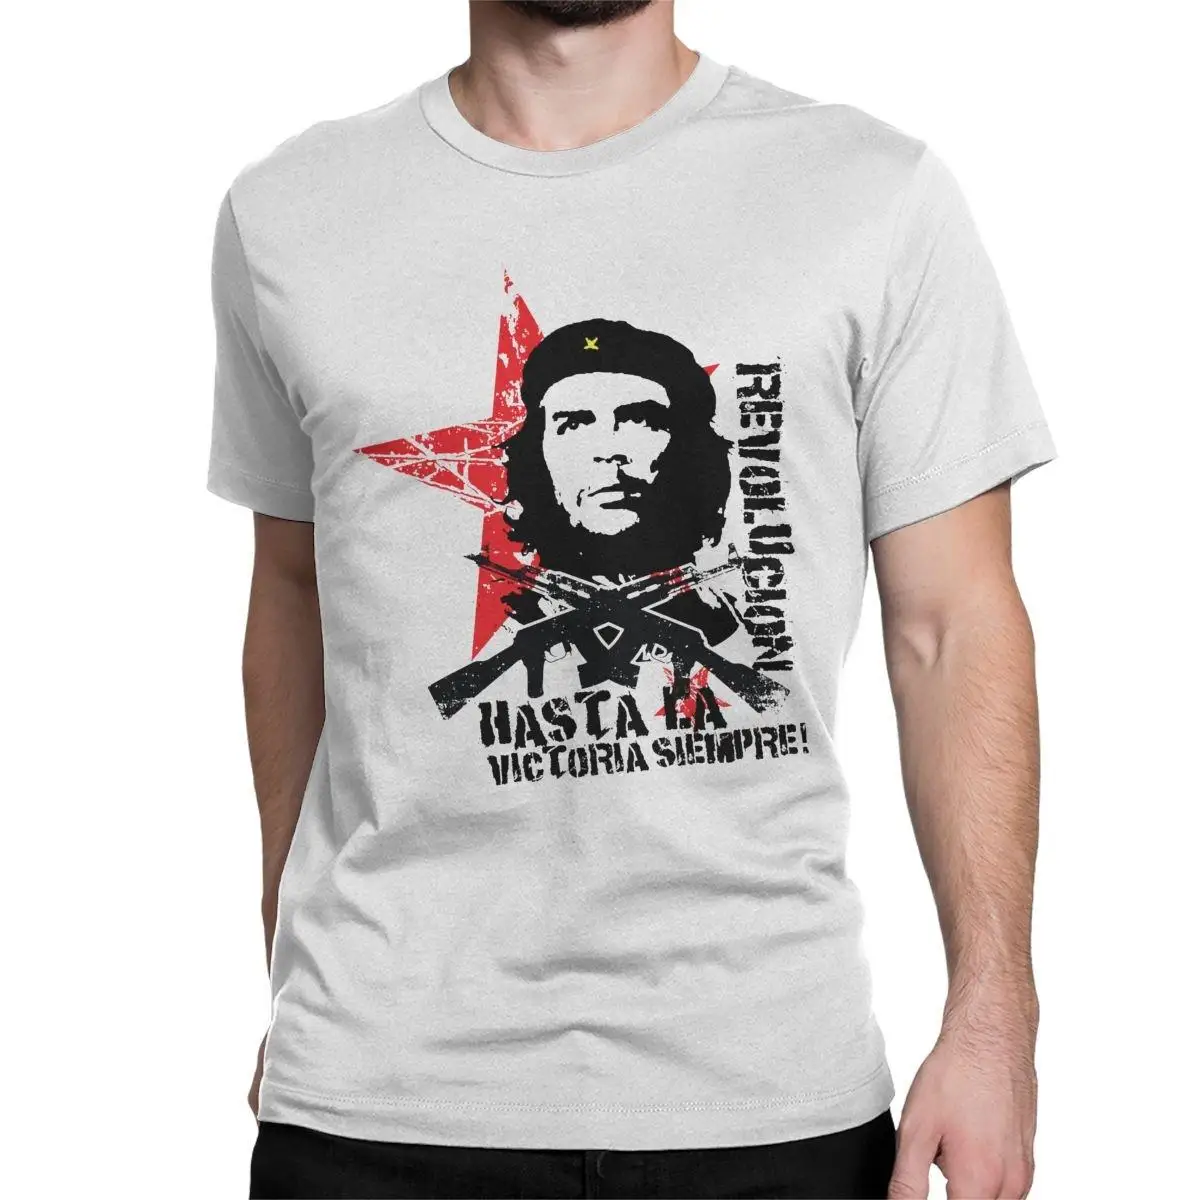 

Мужские футболки Hasta La Victoria Always Che Guevara, одежда с историческими фигурами из чистого хлопка, Винтажная футболка, футболки